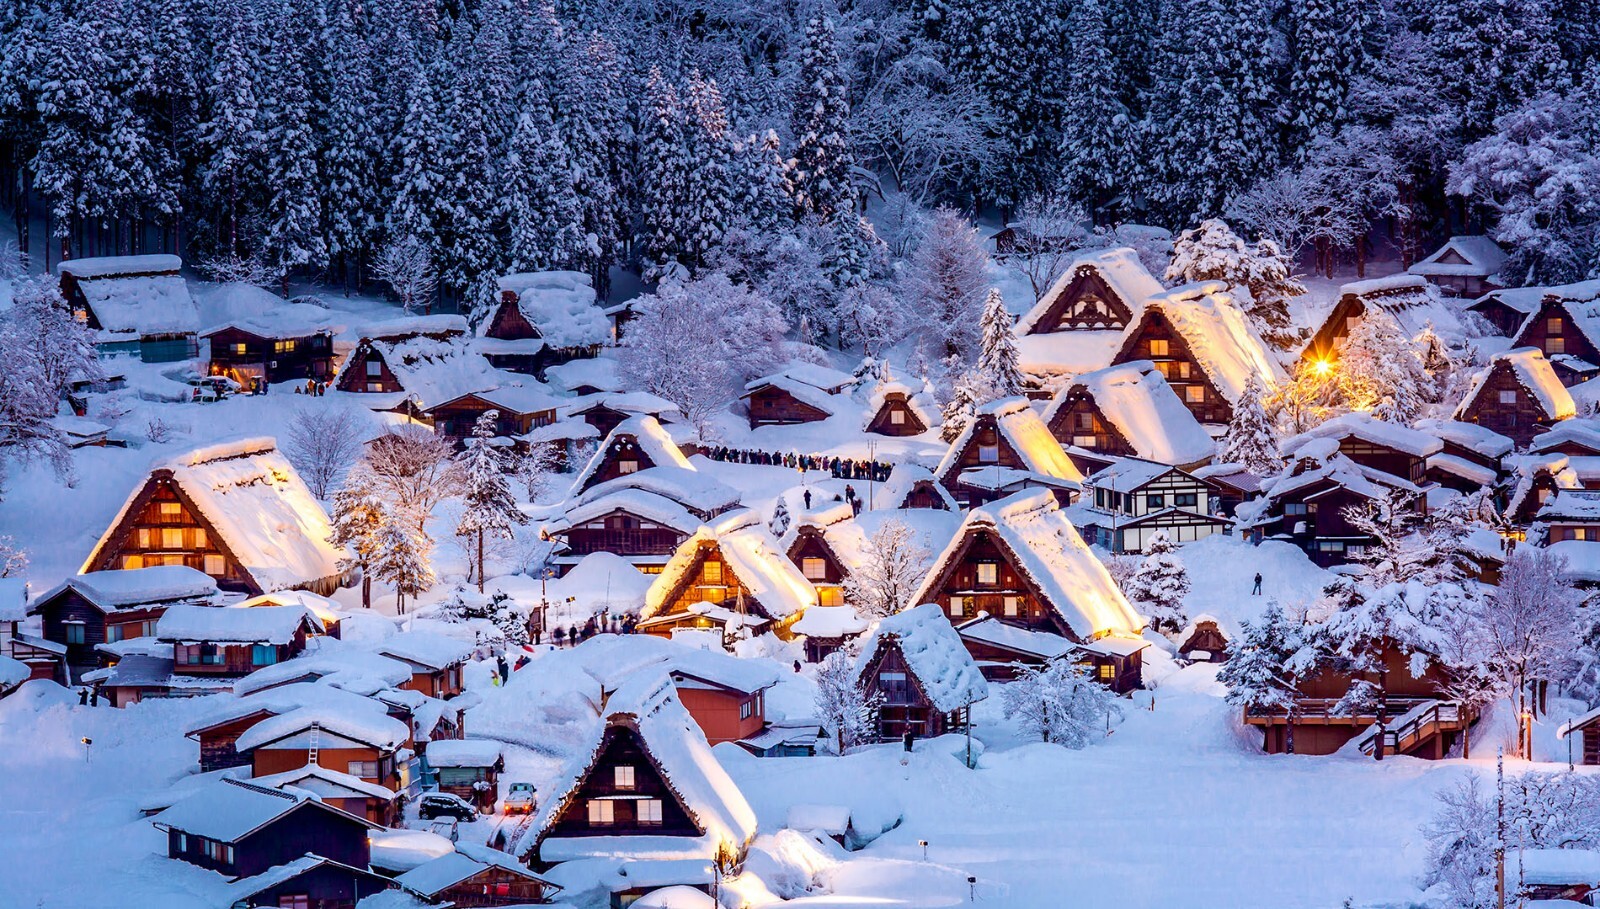 2019至2020日本冬天雪景旅游景点速赏